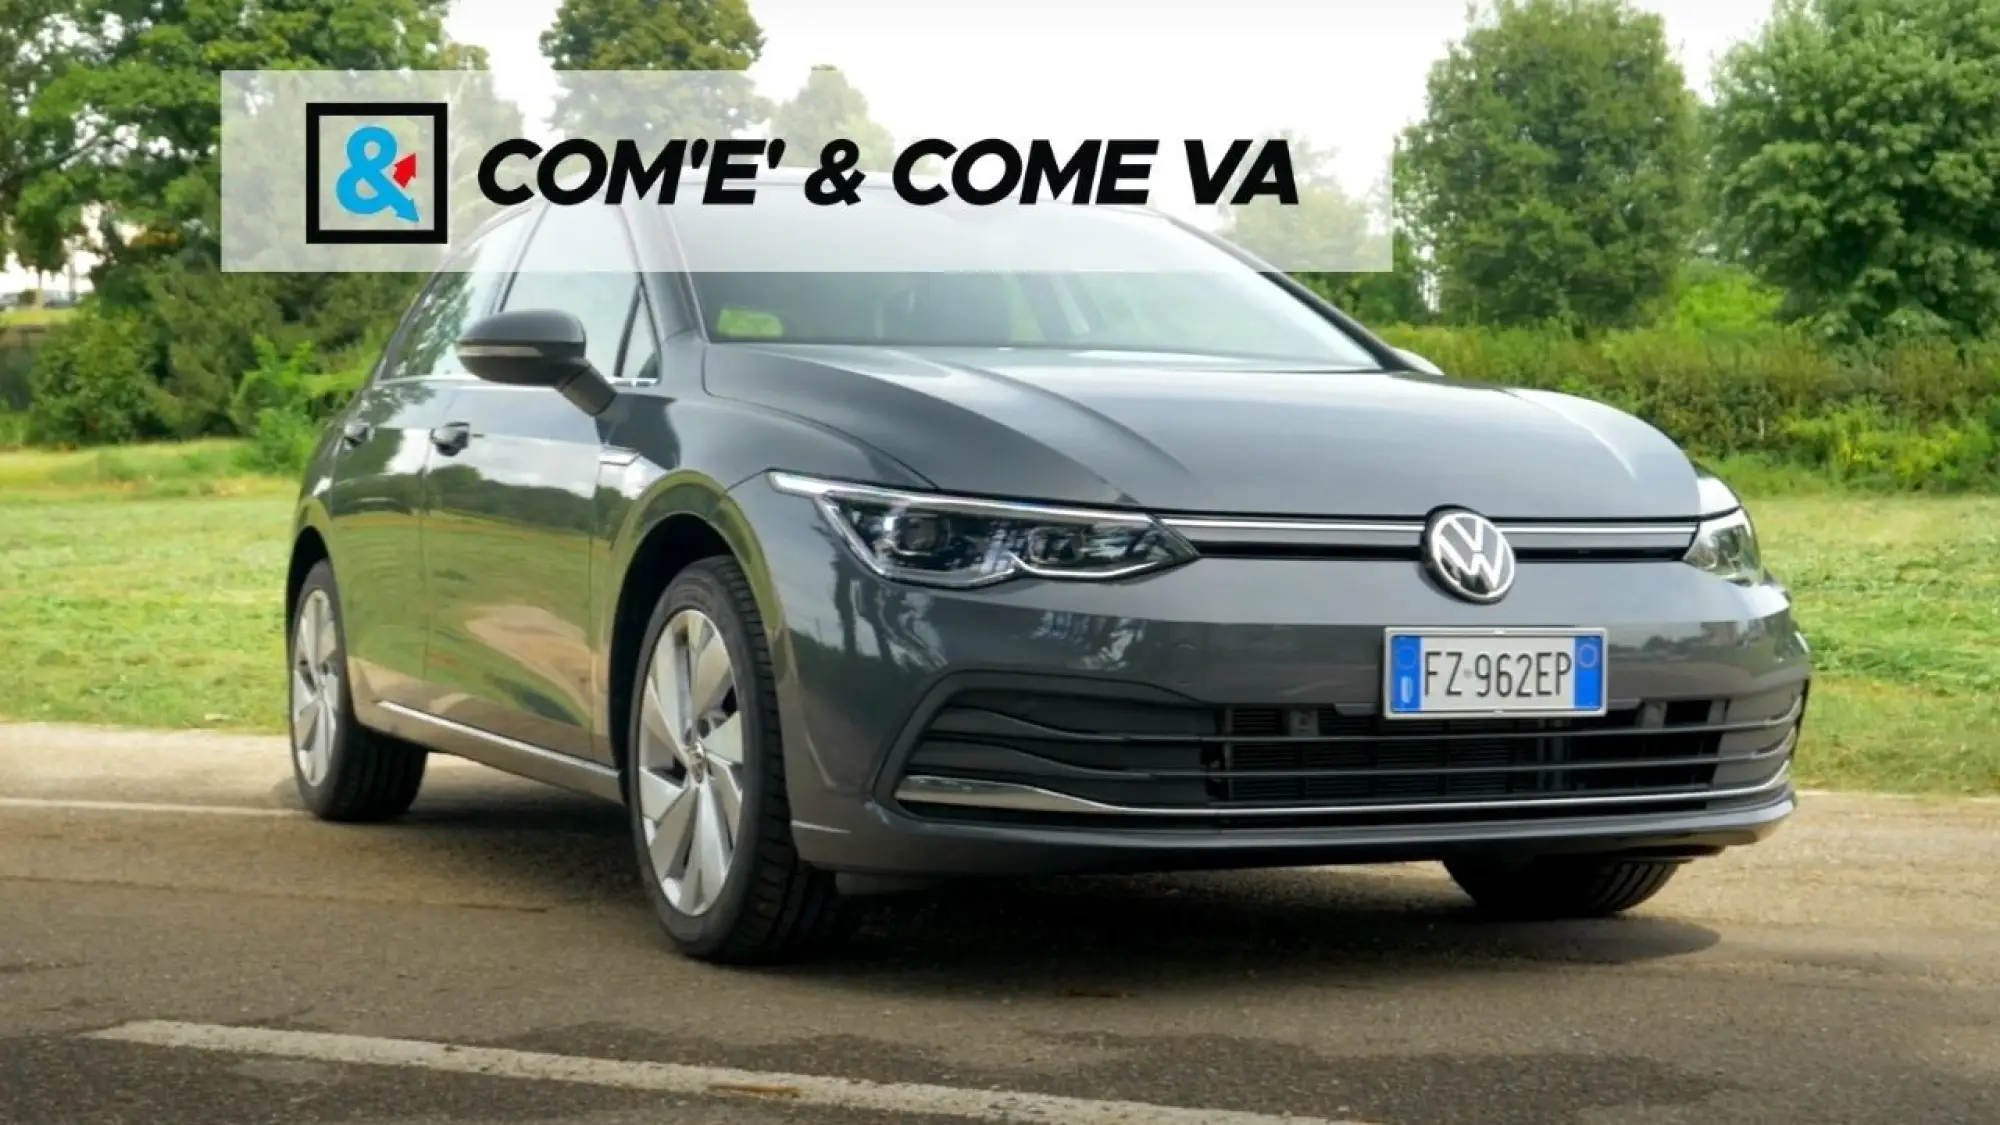 Volkswagen Golf 8 2020 - Come Va  - 1